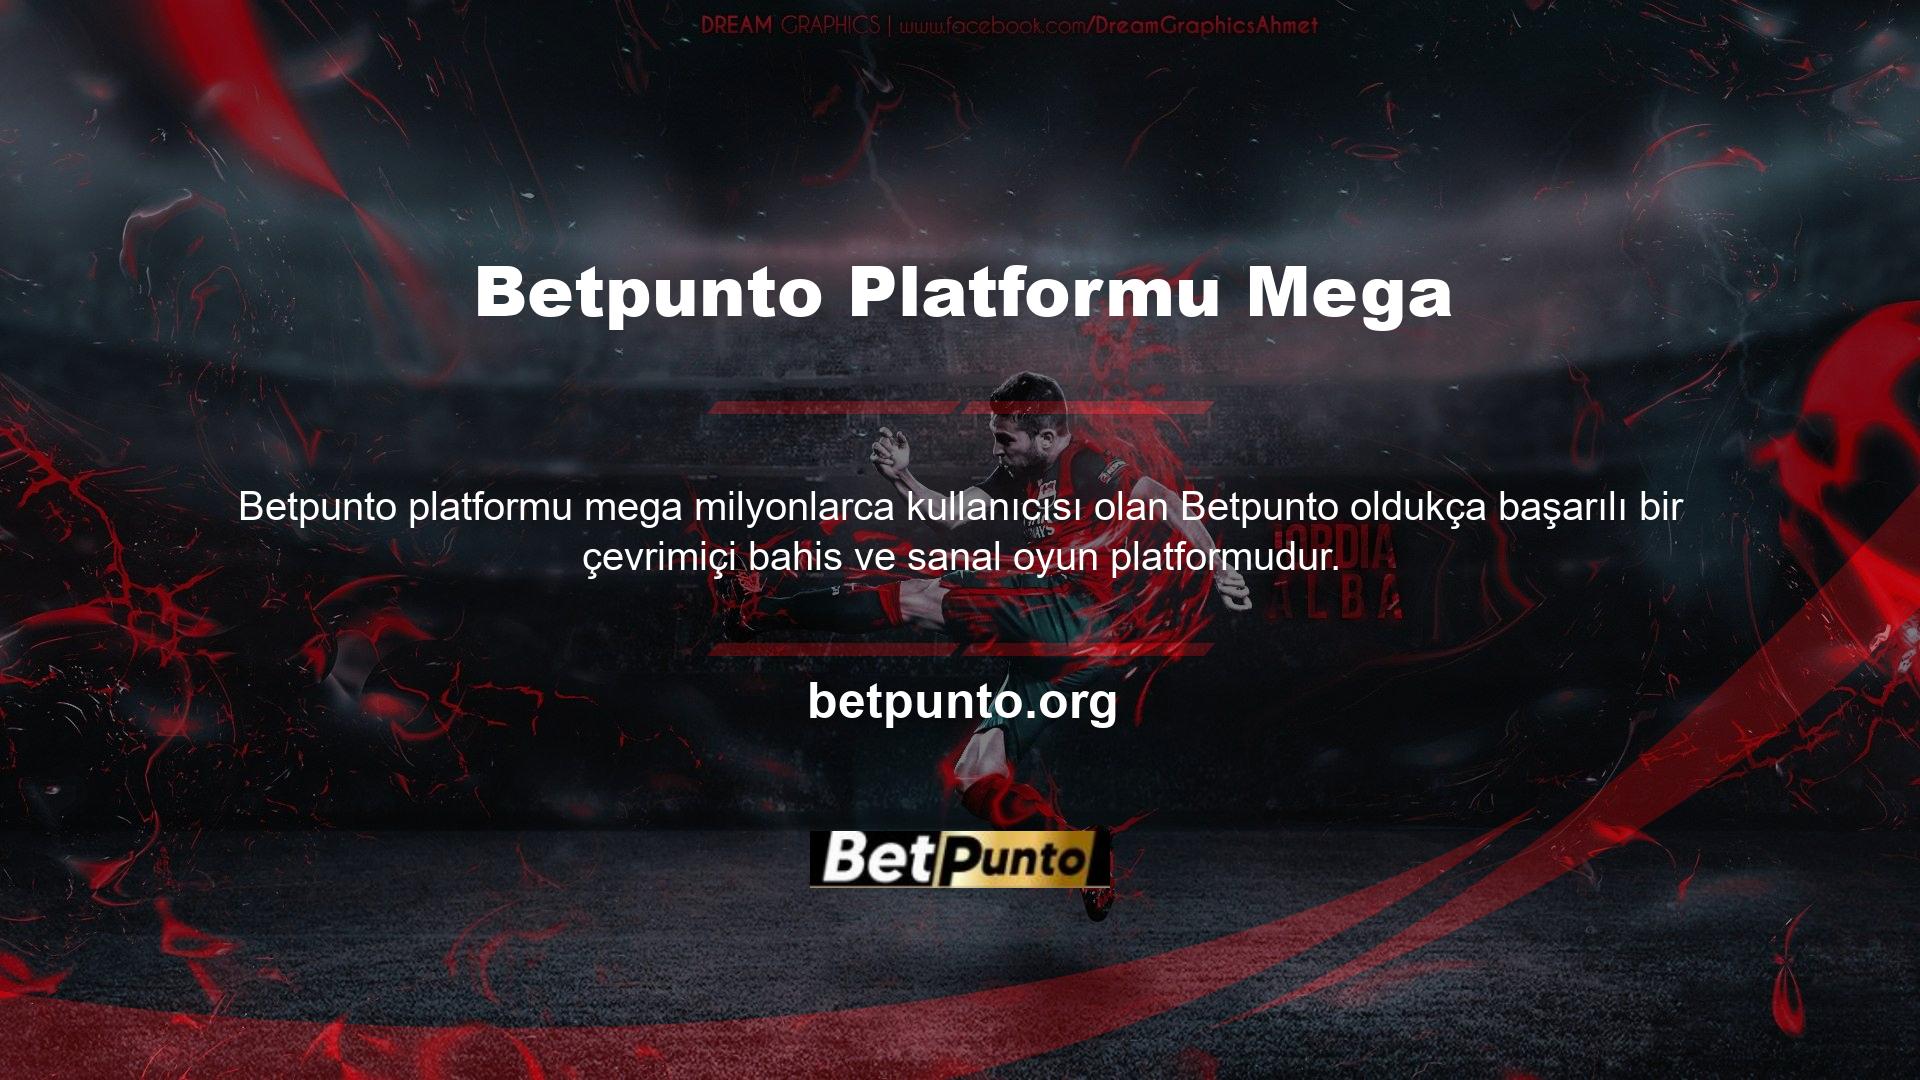 En popüler mobil oyun siteleri arasında ücretsiz ve kullanımı kolay üyelik seçenekleri sunan Betpunto Mobile yer almaktadır